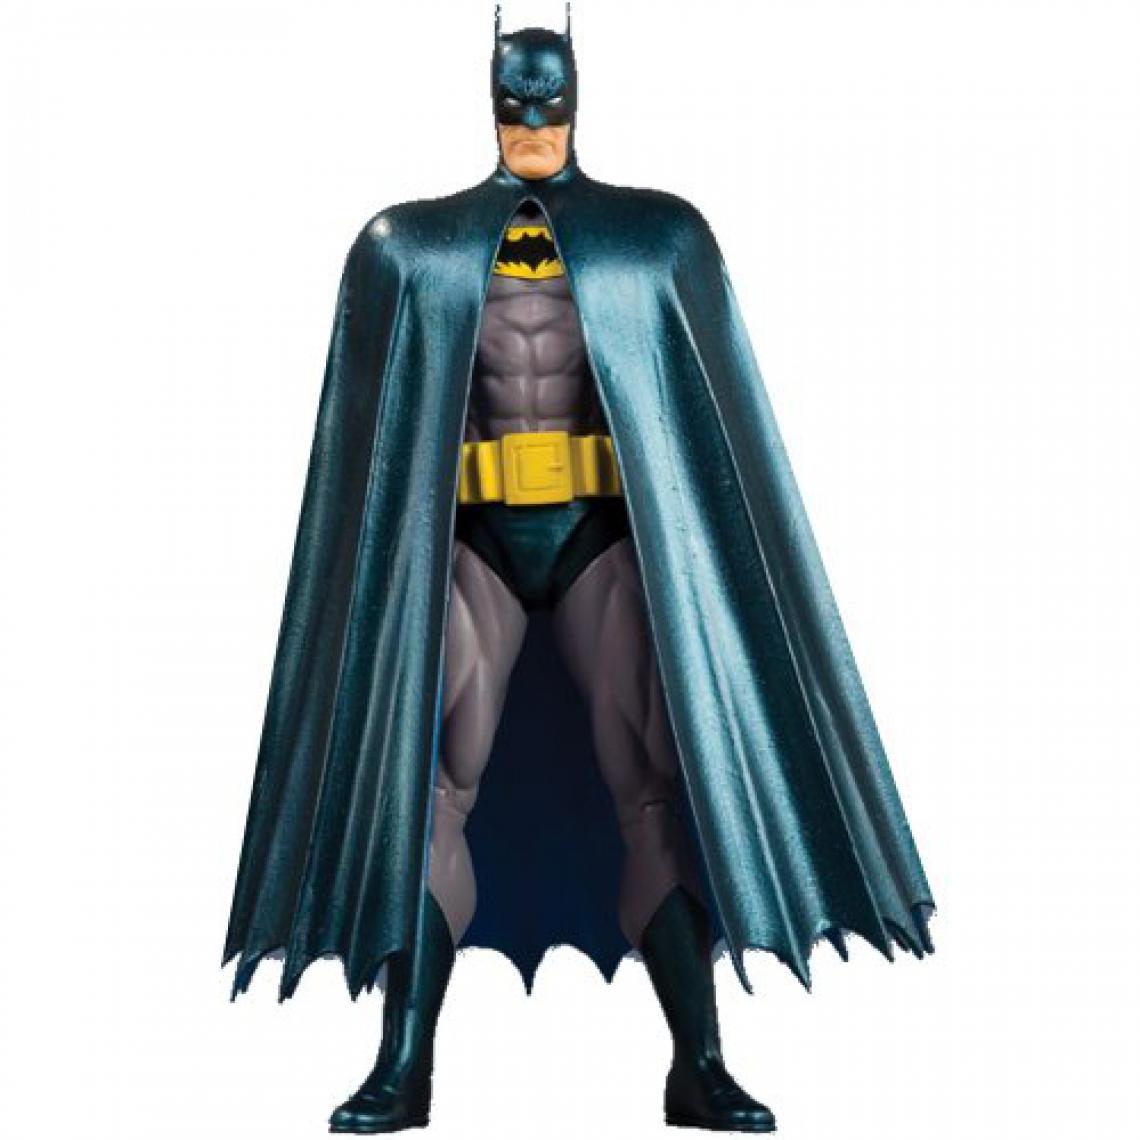 Dc Comics - DC Comics Justice League International Série 1 Figurine Batman - Films et séries